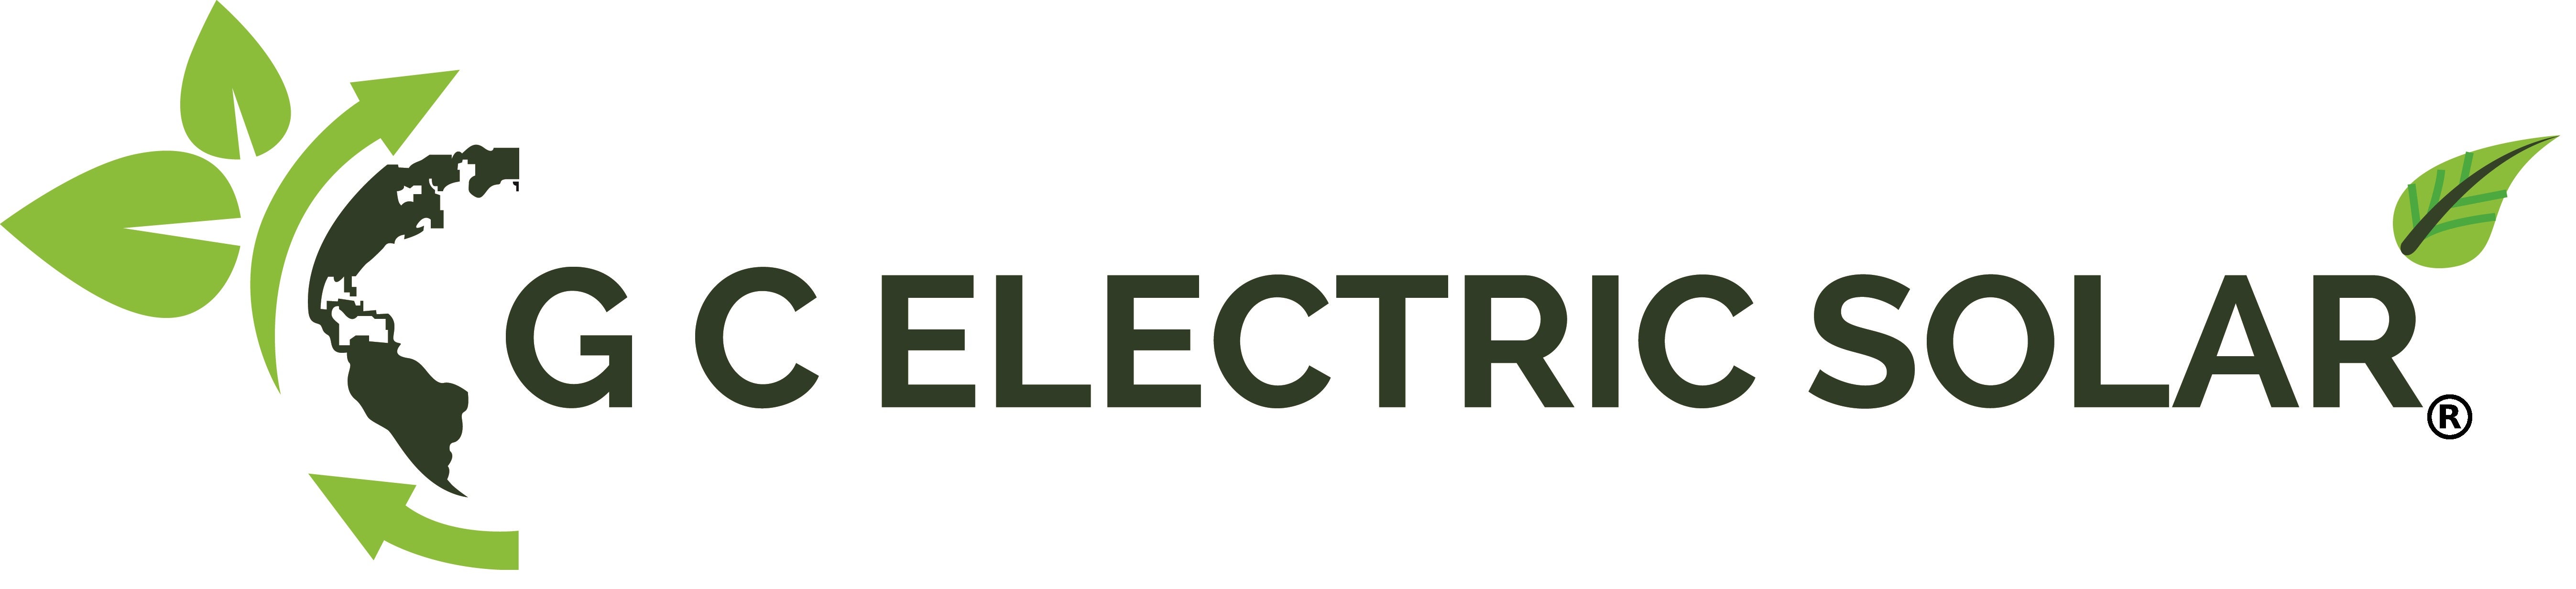 GC Electric Solar logo